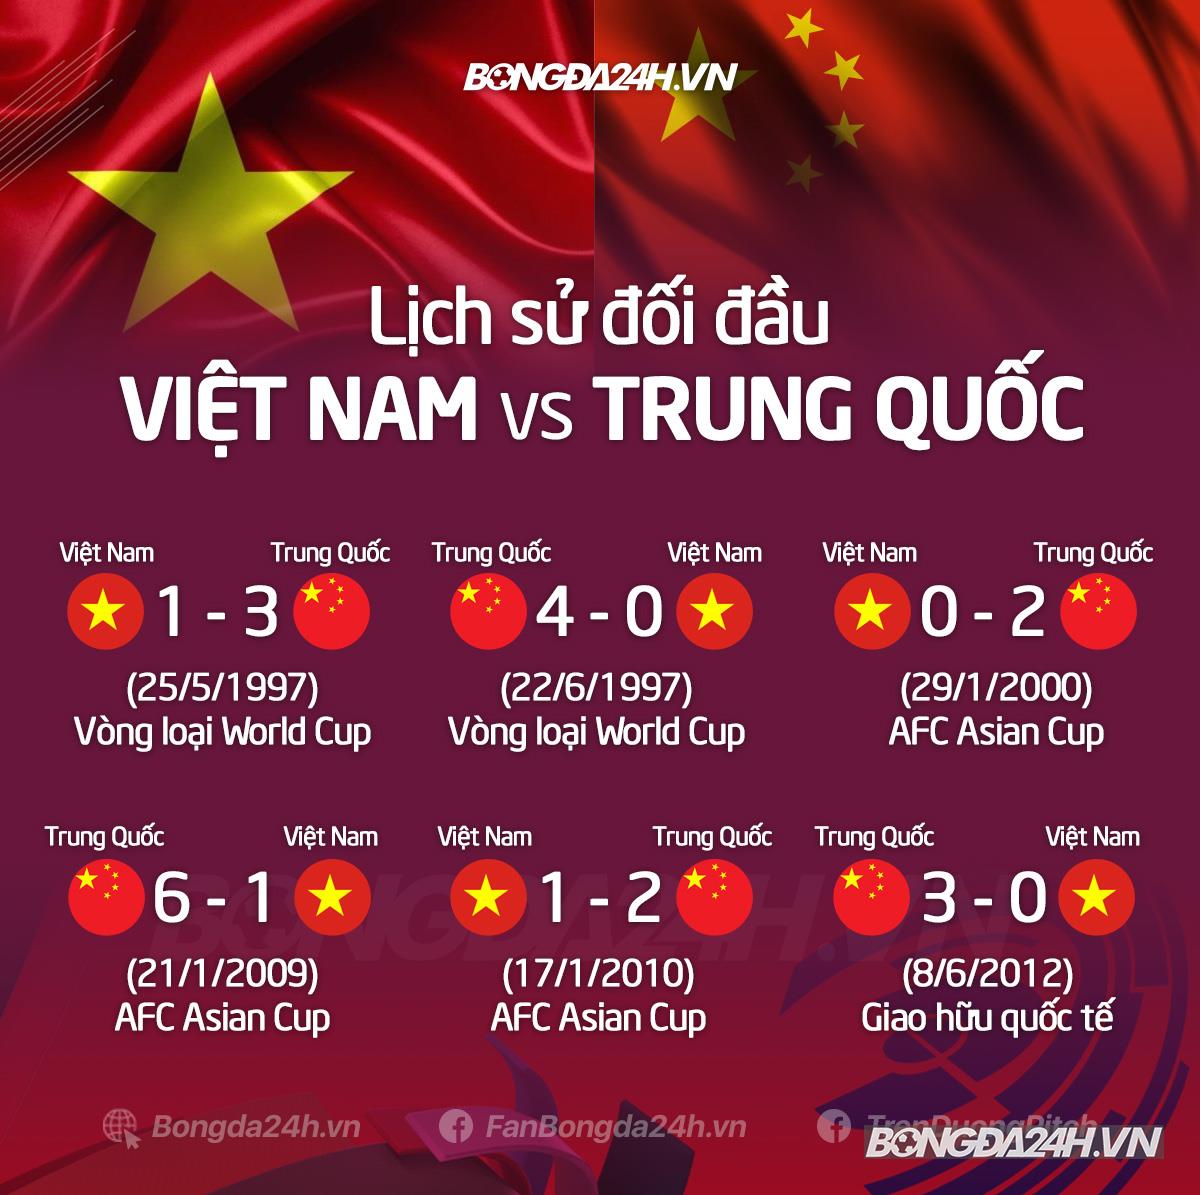 Việt Nam Trung Quốc